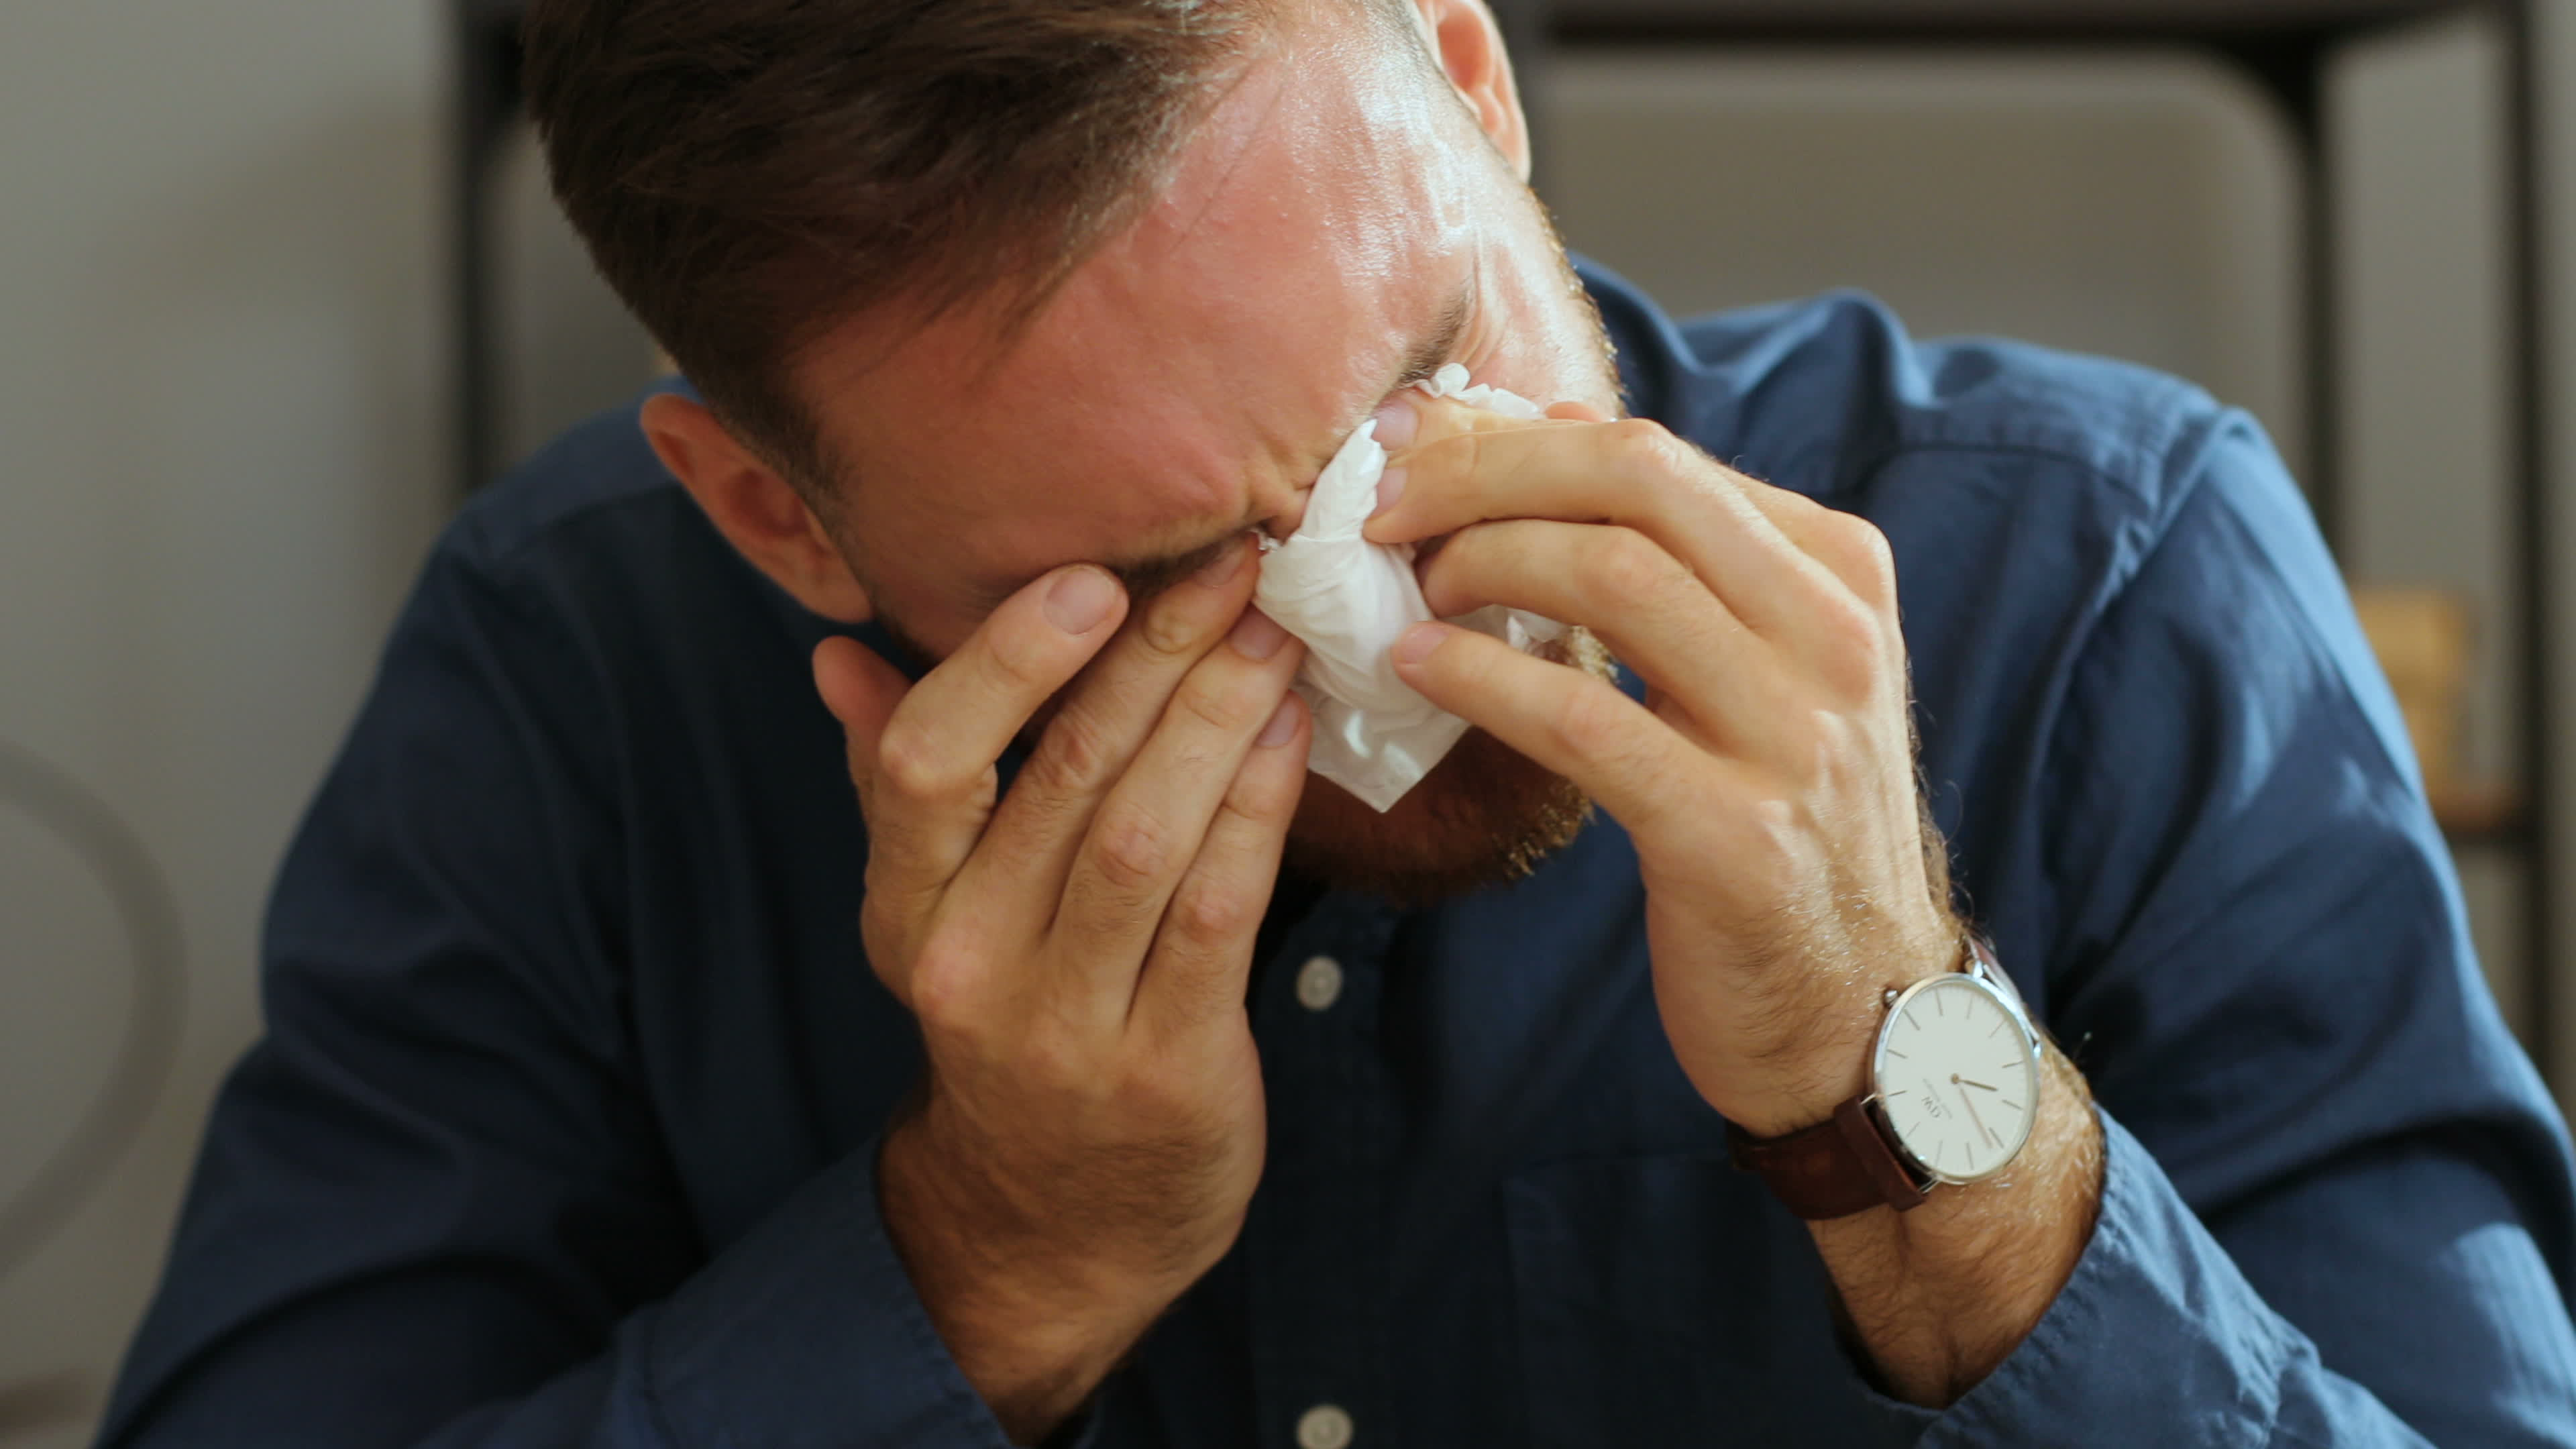 Ein Mann wischt sich weinend mit einer Serviette die Augen ab | Quelle: Shutterstock